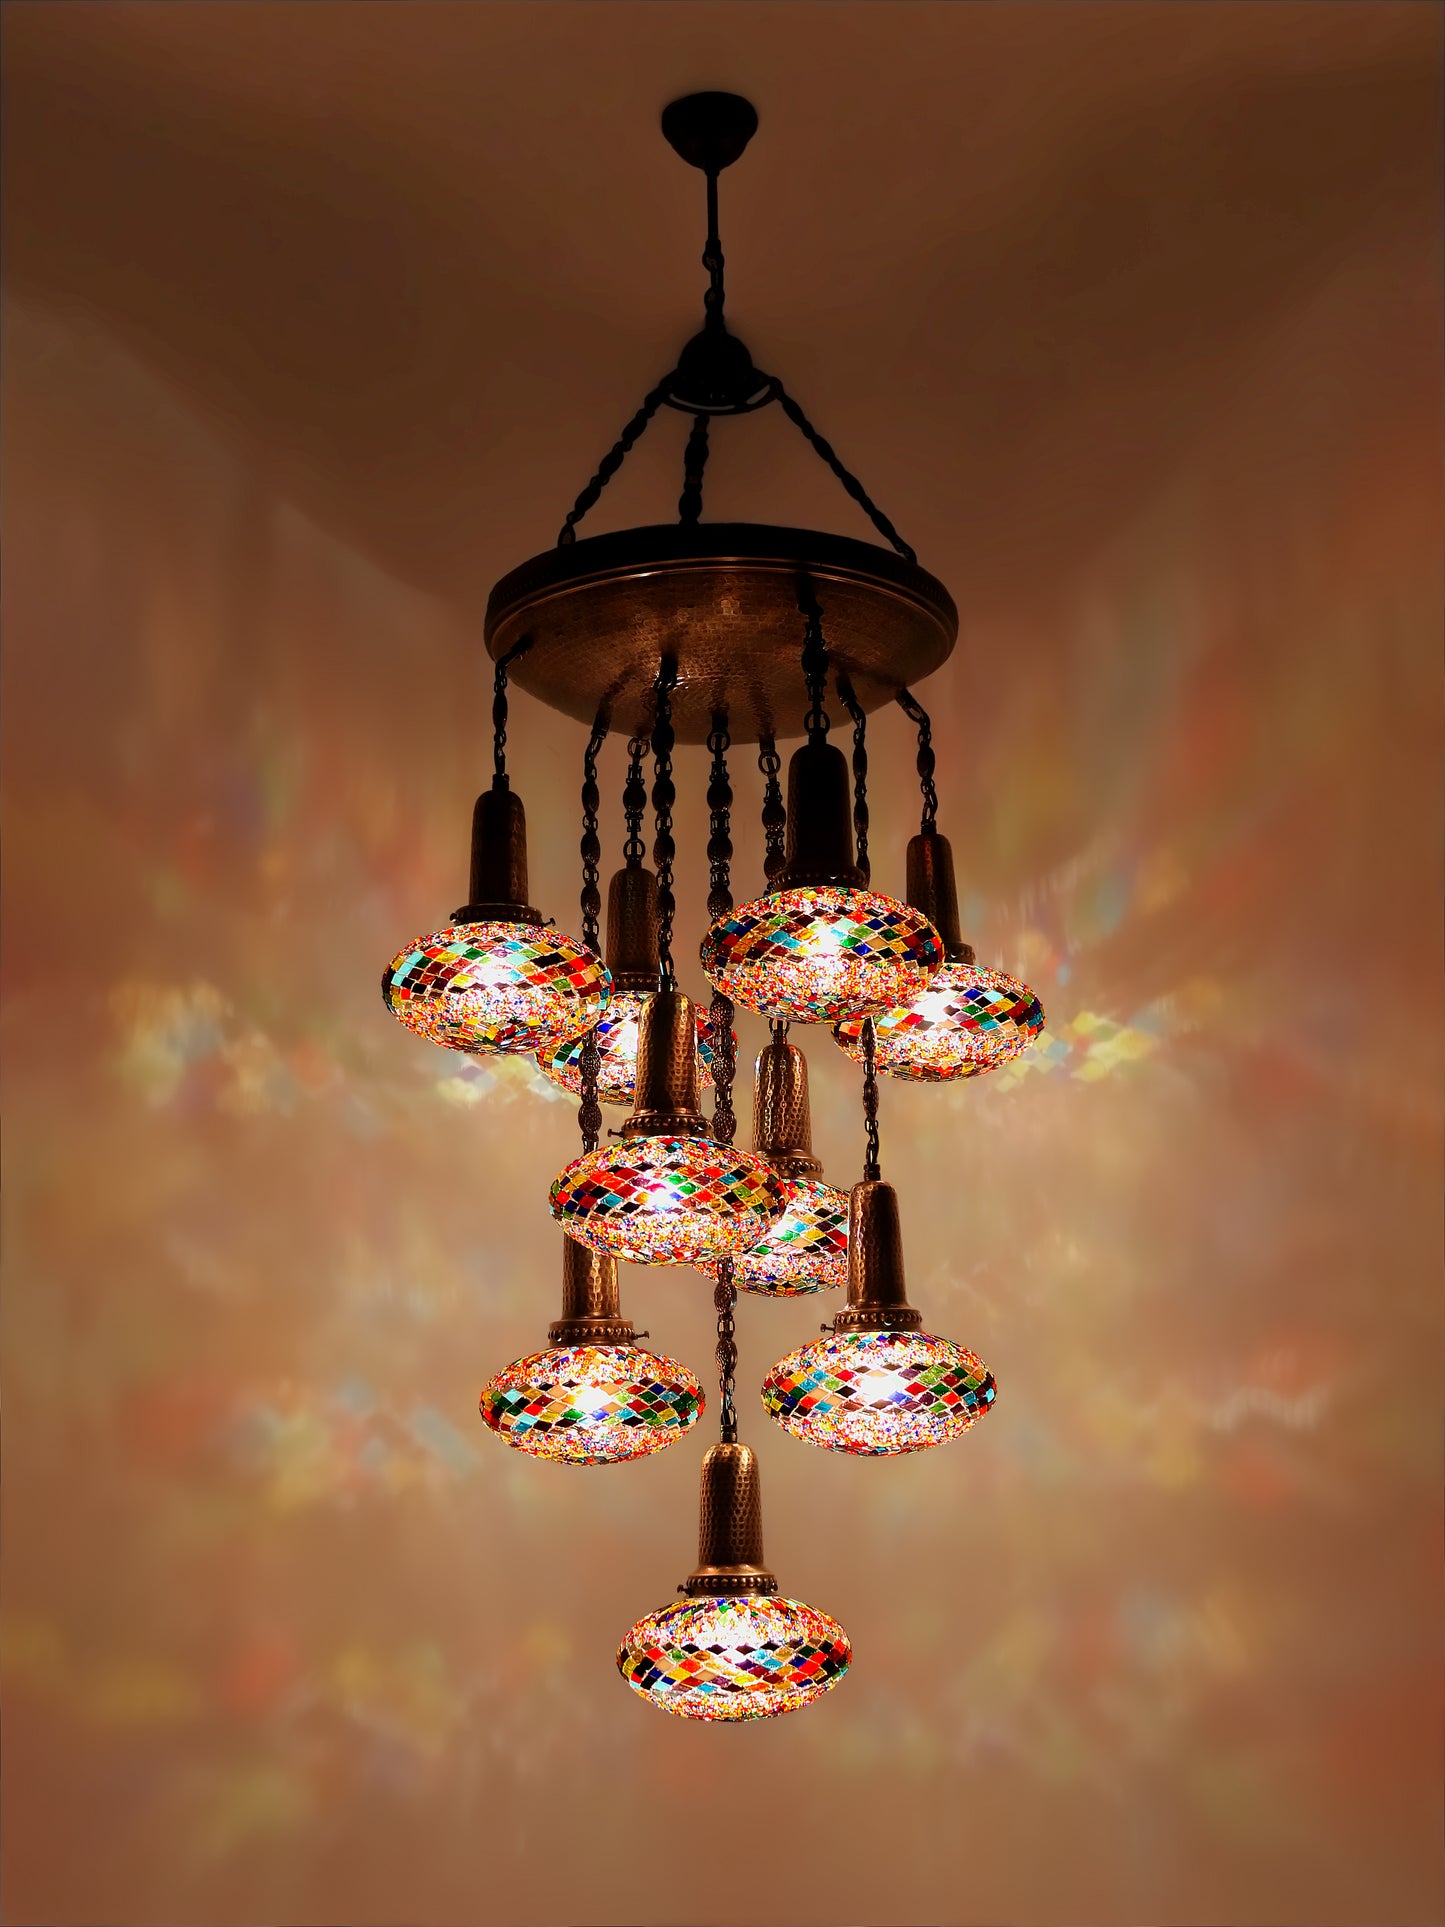 Turkish Mosaic Chandelier 9-Globe Sultan Design Ceiling Light